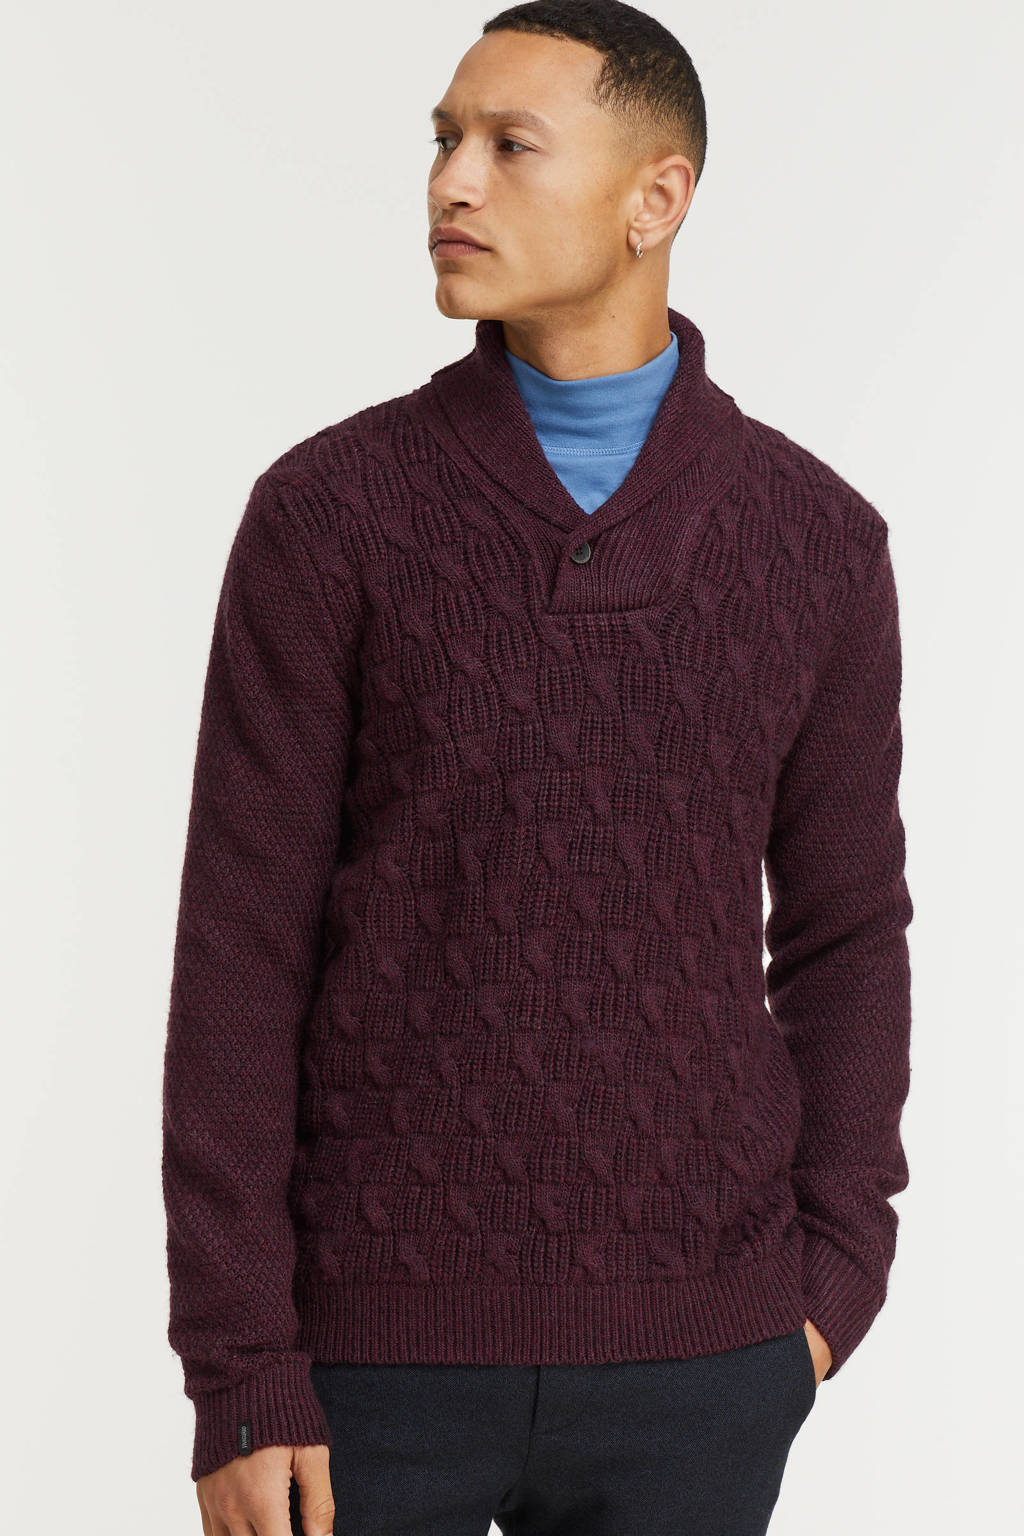 Aubergine heren Vanguard trui van acryl met lange mouwen, sjaalkraag, knoopsluiting en textuur